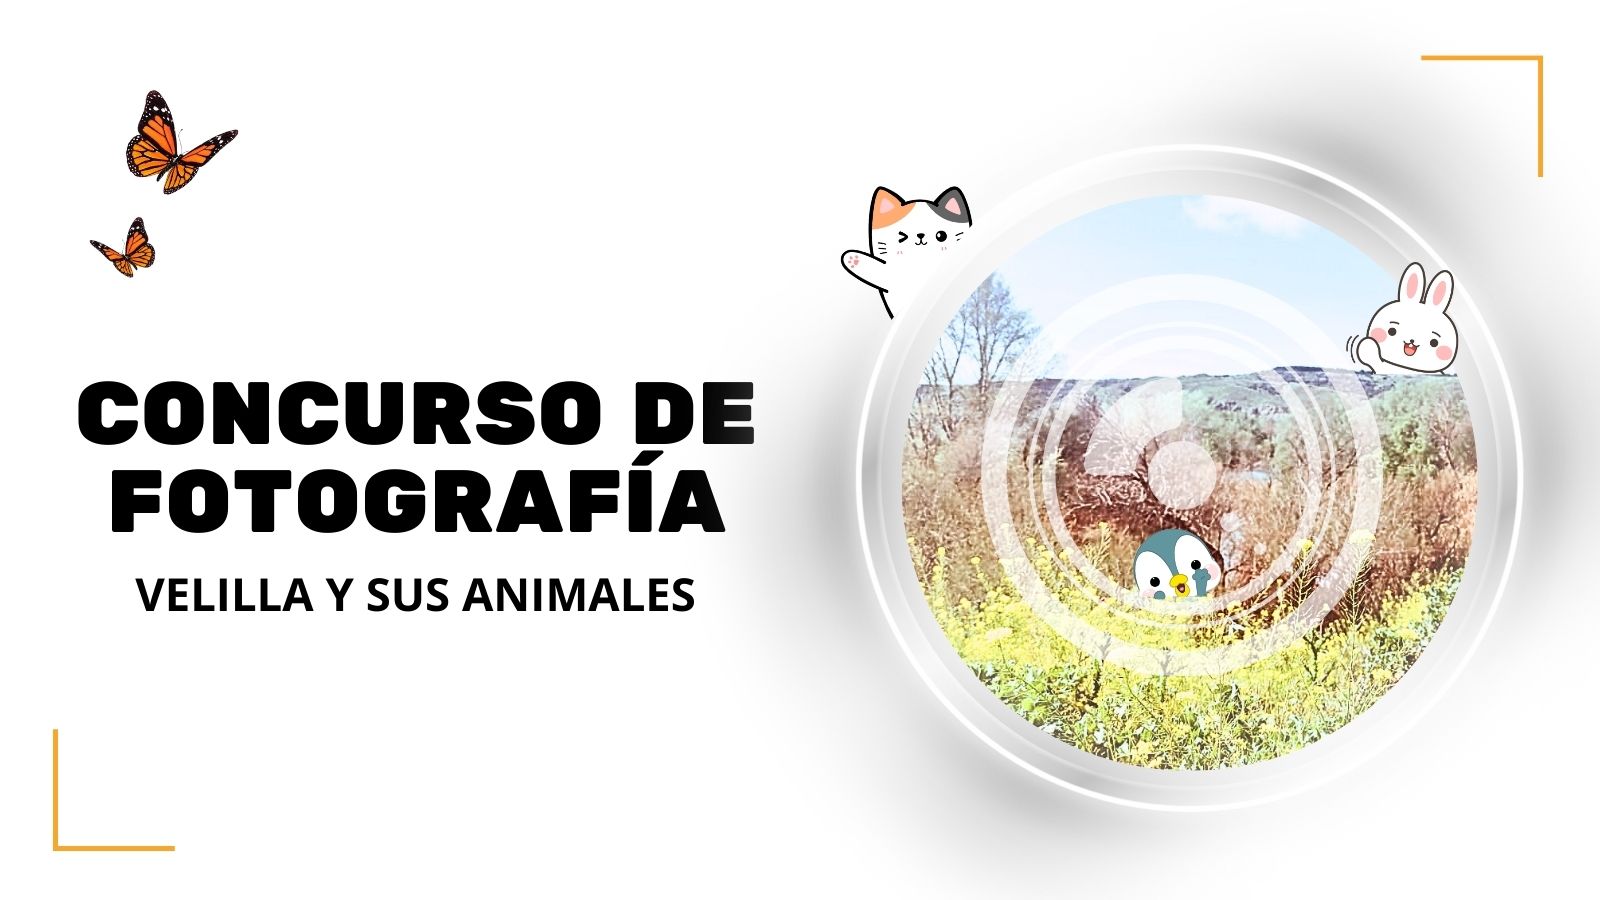 Concurso de fotografía “Velilla y sus animales”